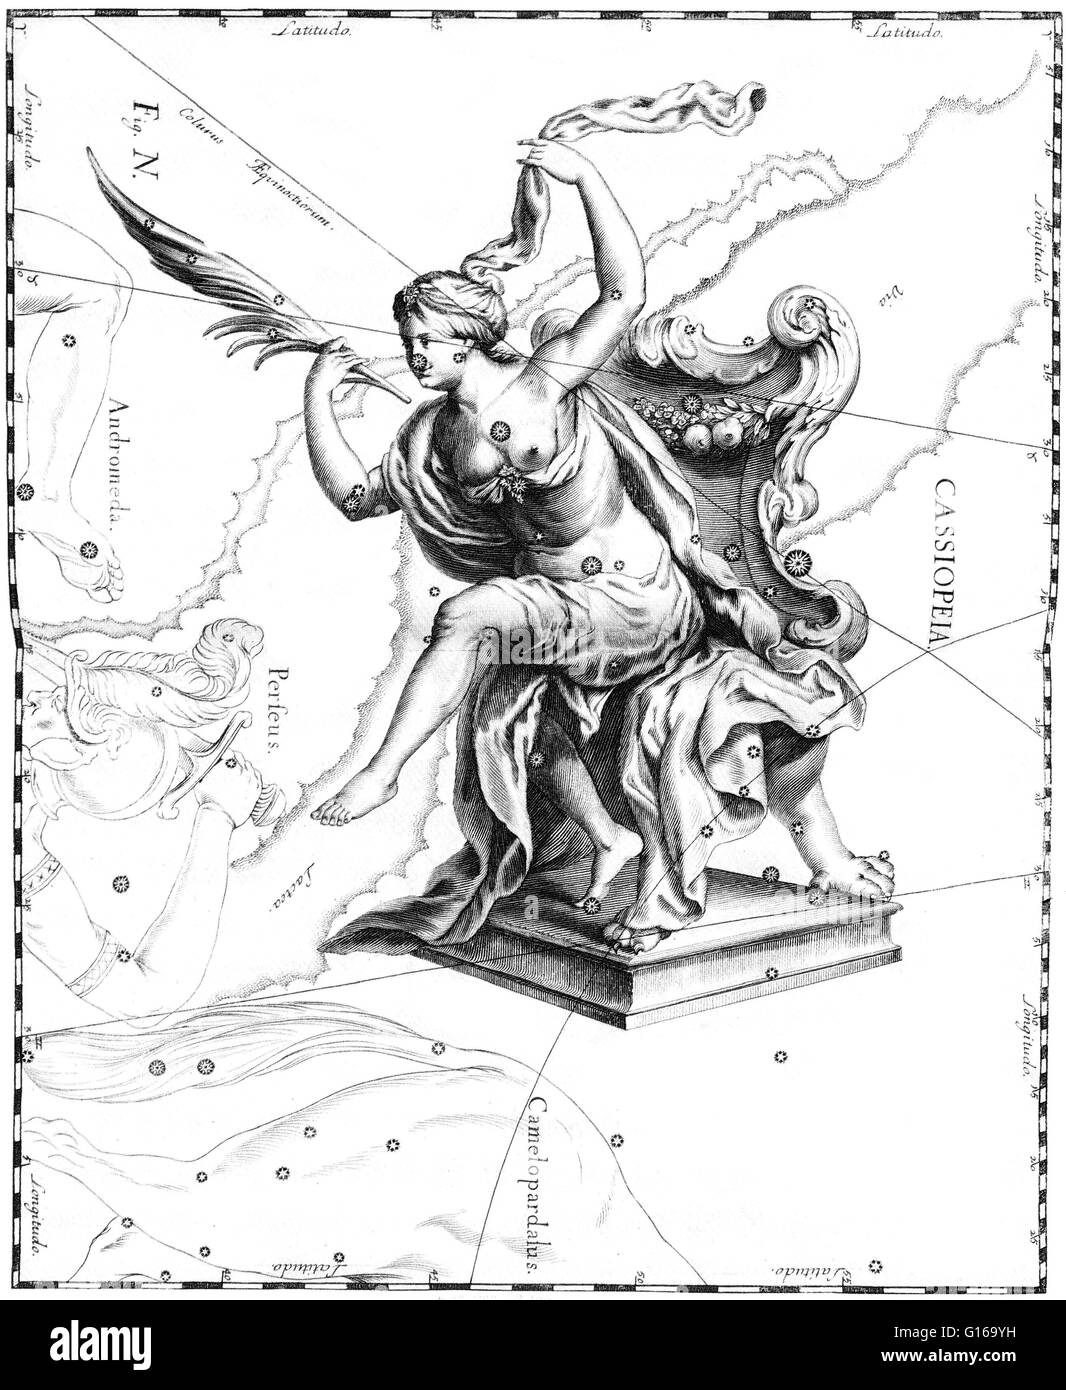 Costellazione di Cassiopeia da Johannes Hevelius' Prodromus Astronomiae, Firmamentum sobiescianum, sive Uranographia, 1687. Cassiopeia è una costellazione nel northern sky, chiamato dopo la vana regina Cassiopeia nella mitologia greca, che vantava su di lei u Foto Stock